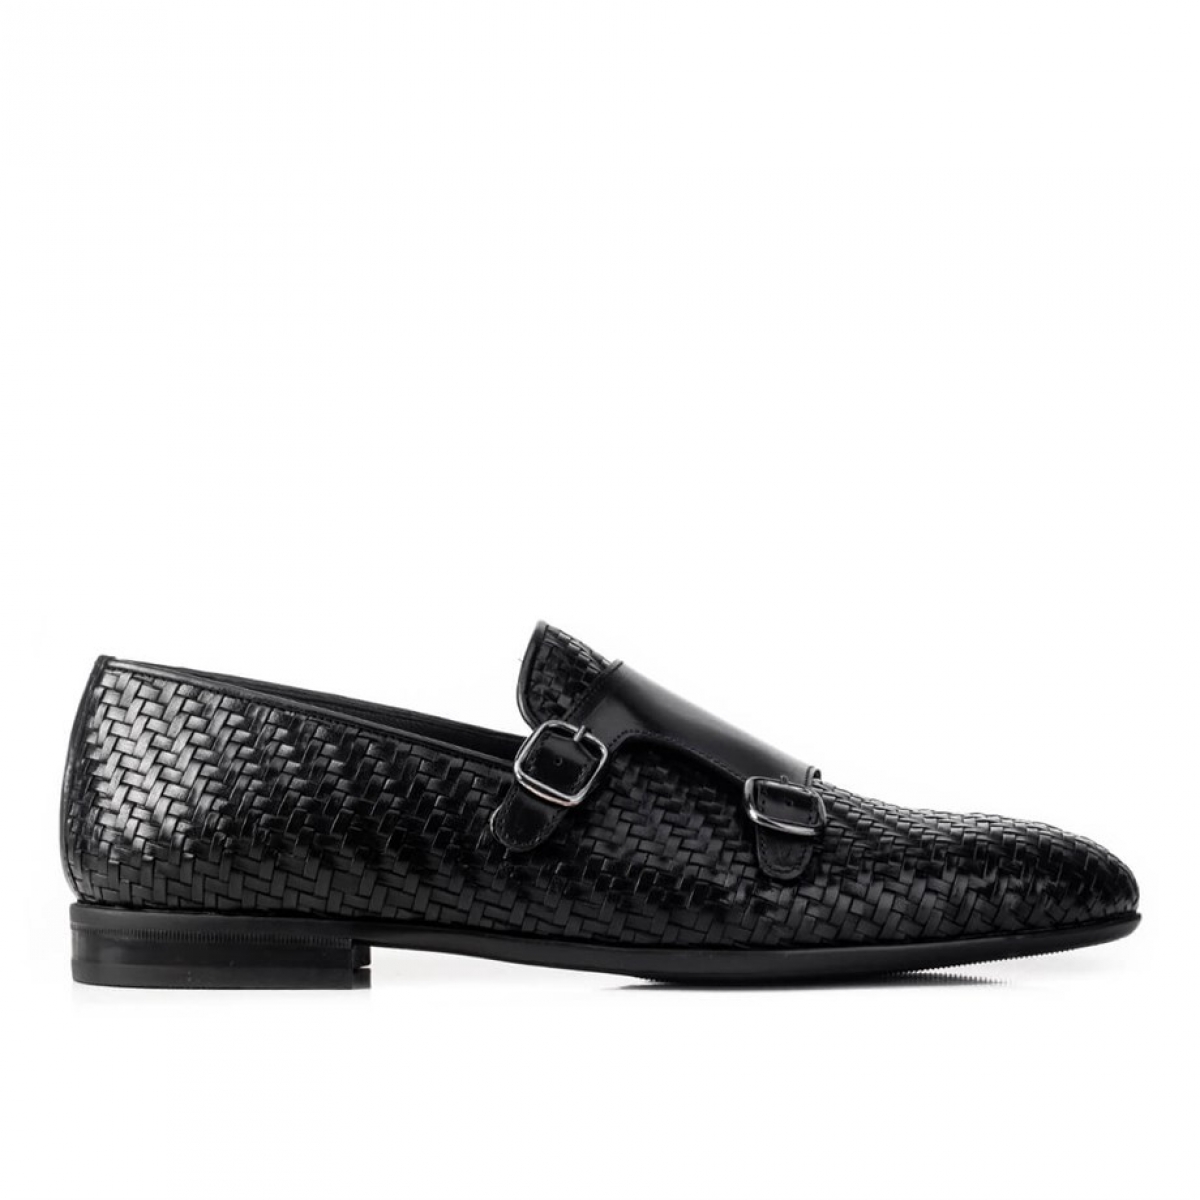 Flo Hakiki Deri Siyah Erkek Klasik Ayakkabı. 2